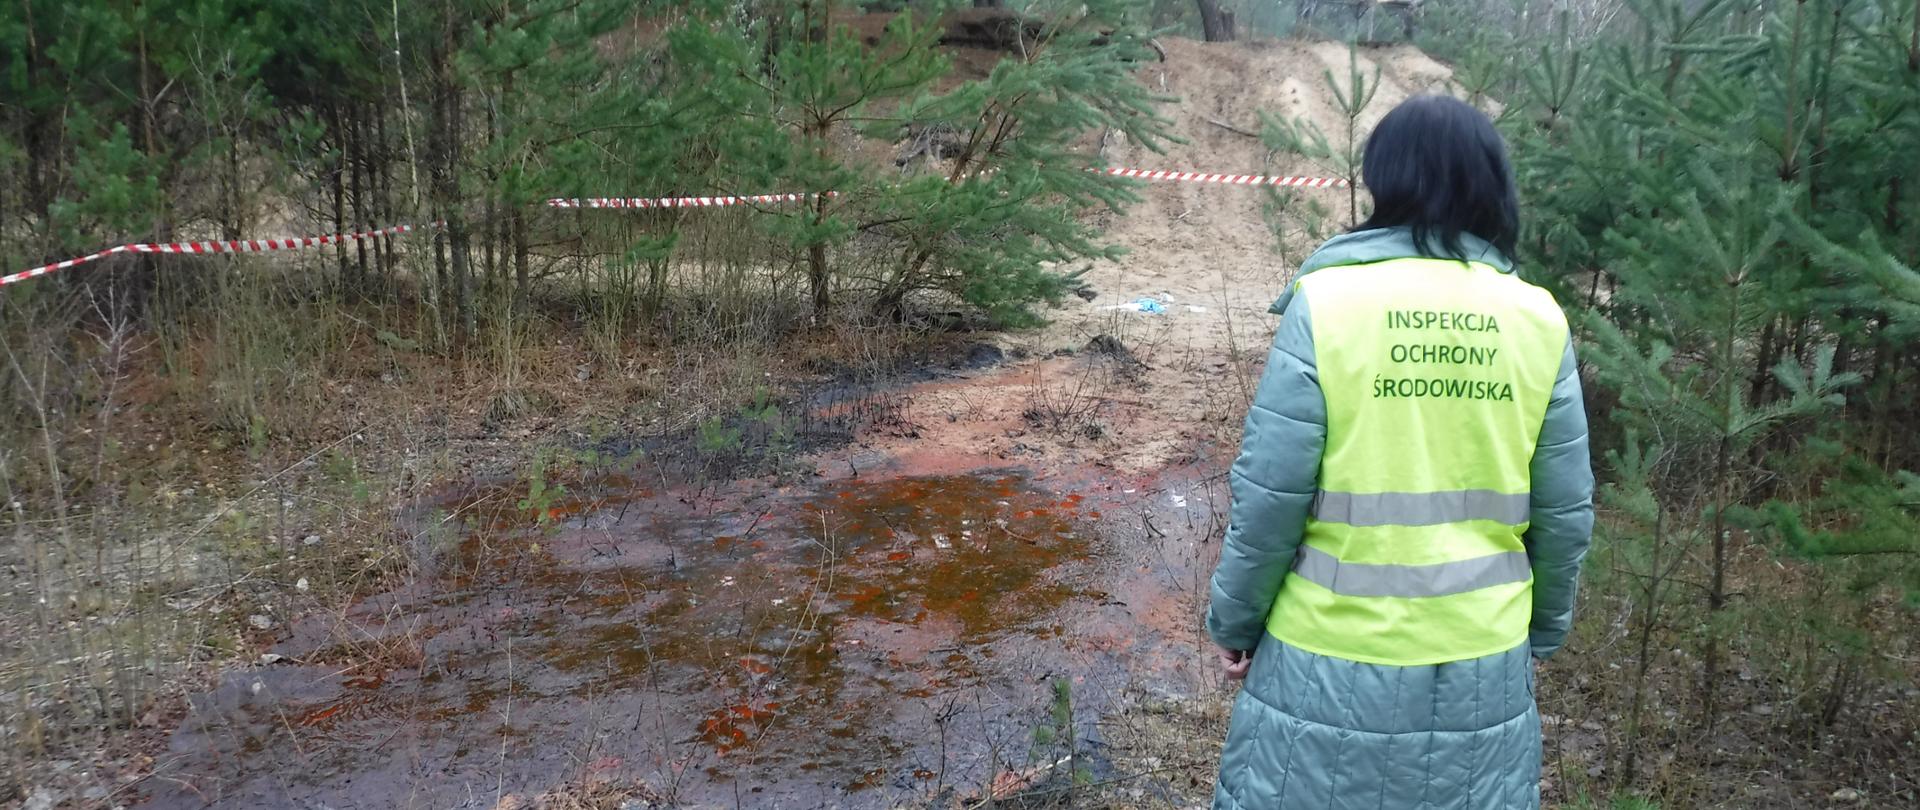 Inspektor Wojewódzkiego Inspektoratu Ochrony Środowiska w Warszawie stojąc prowadzi czynności: dokonuje oględzin miejsca nielegalnego wylania odpadów na leśny grunt 